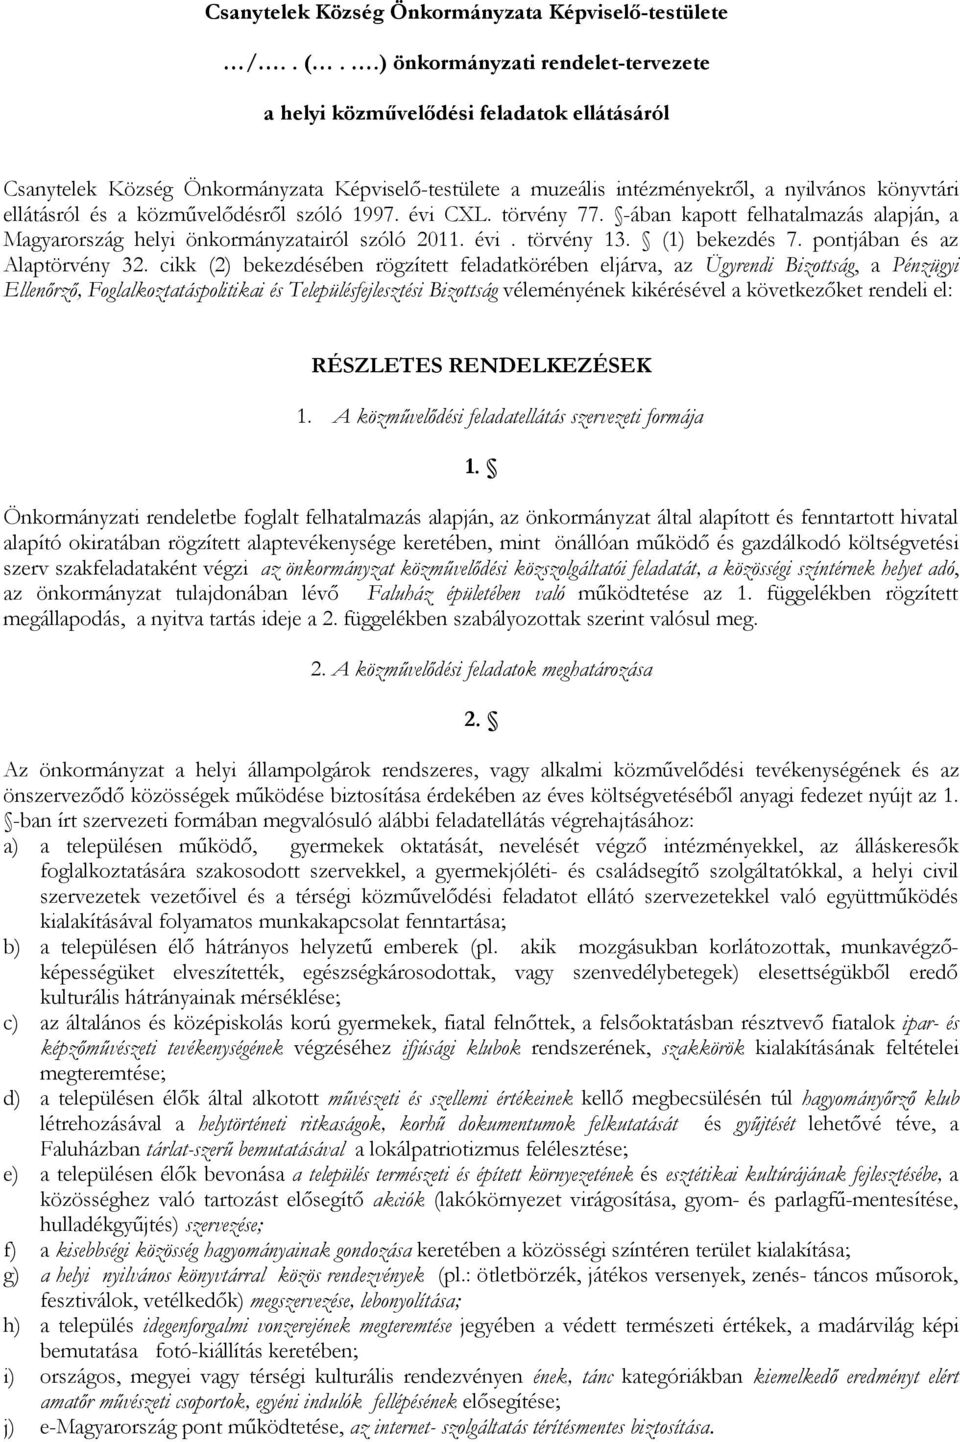 közművelődésről szóló 1997. évi CXL. törvény 77. -ában kapott felhatalmazás alapján, a Magyarország helyi önkormányzatairól szóló 2011. évi. törvény 13. (1) bekezdés 7. pontjában és az Alaptörvény 32.